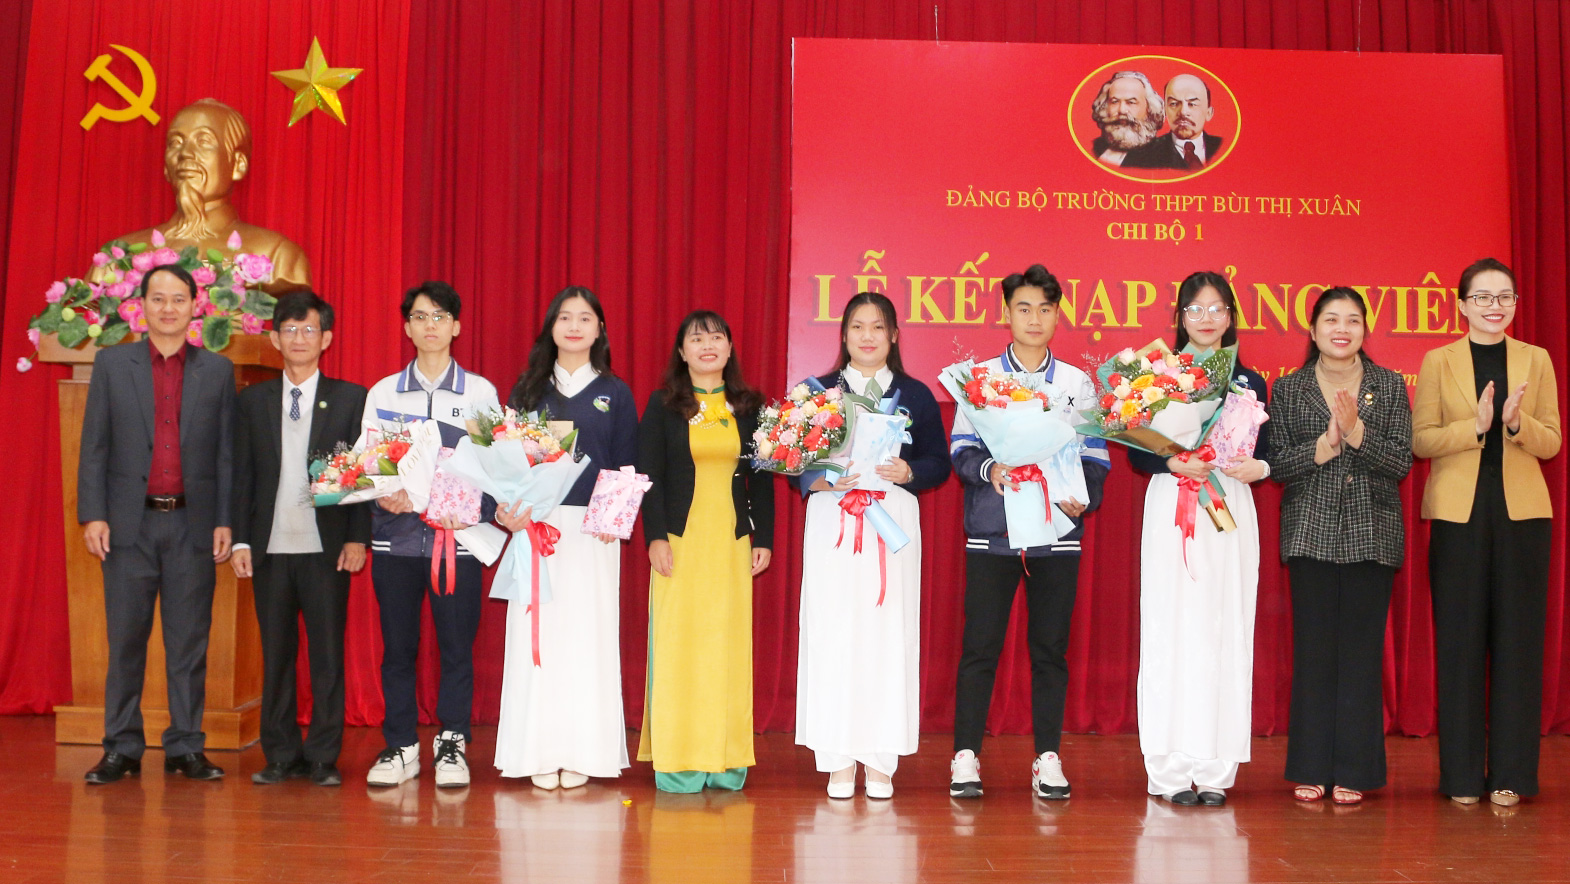 Đại diện Ban Tổ chức, Ban Tuyên giáo Thành ủy Đà Lạt, Thành đoàn Đà Lạt và lãnh đạo Đảng ủy Trường THPT Bùi Thị Xuân tặng hoa chúc mừng các đảng viên mới